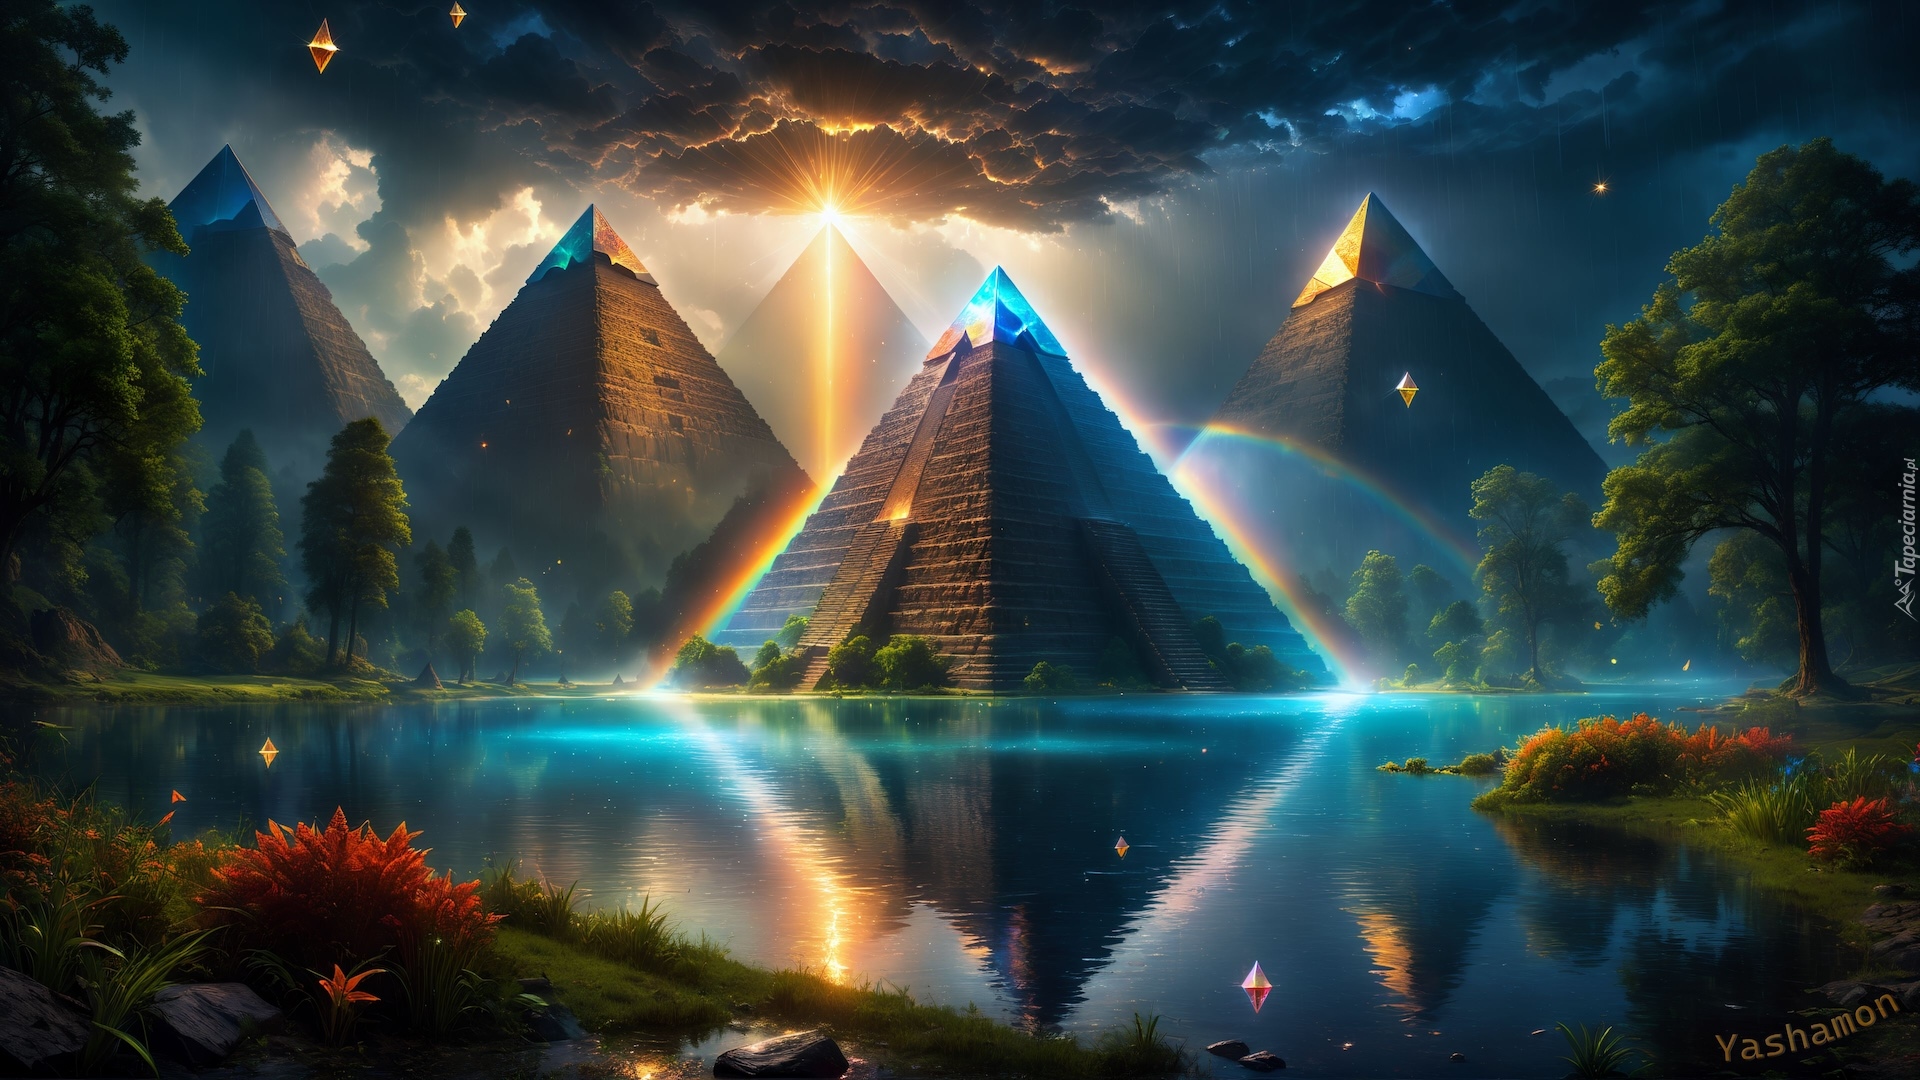 Grafika, Piramidy, Jezioro, Drzewa, Odbicie, Tęcza, Promienie słońca Fantasy